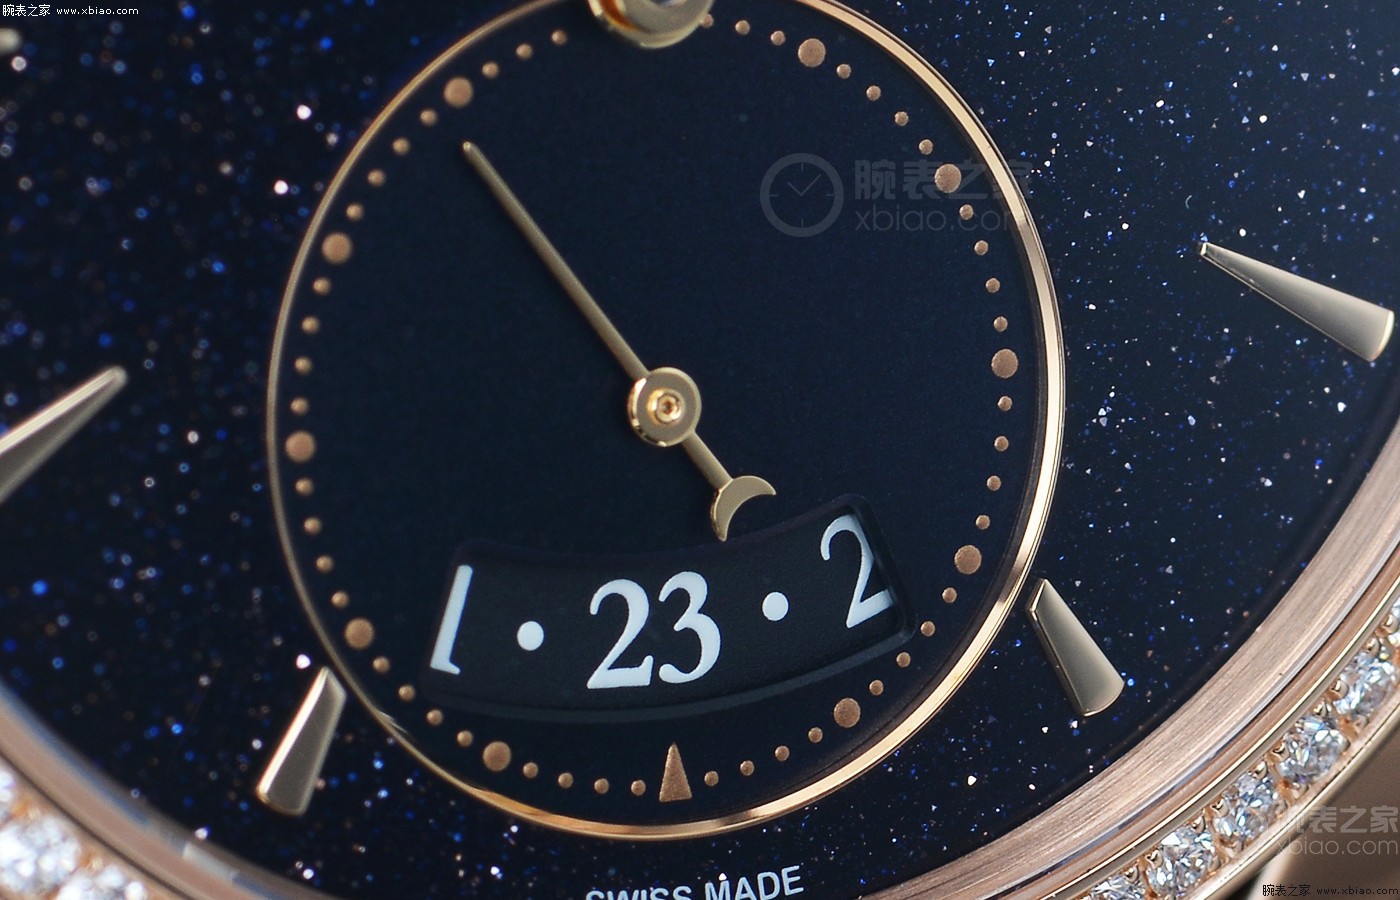 腕间的灿烂“星辰” 品评帕玛强尼顺通系列产品 Metropolitaine Galaxy腕表